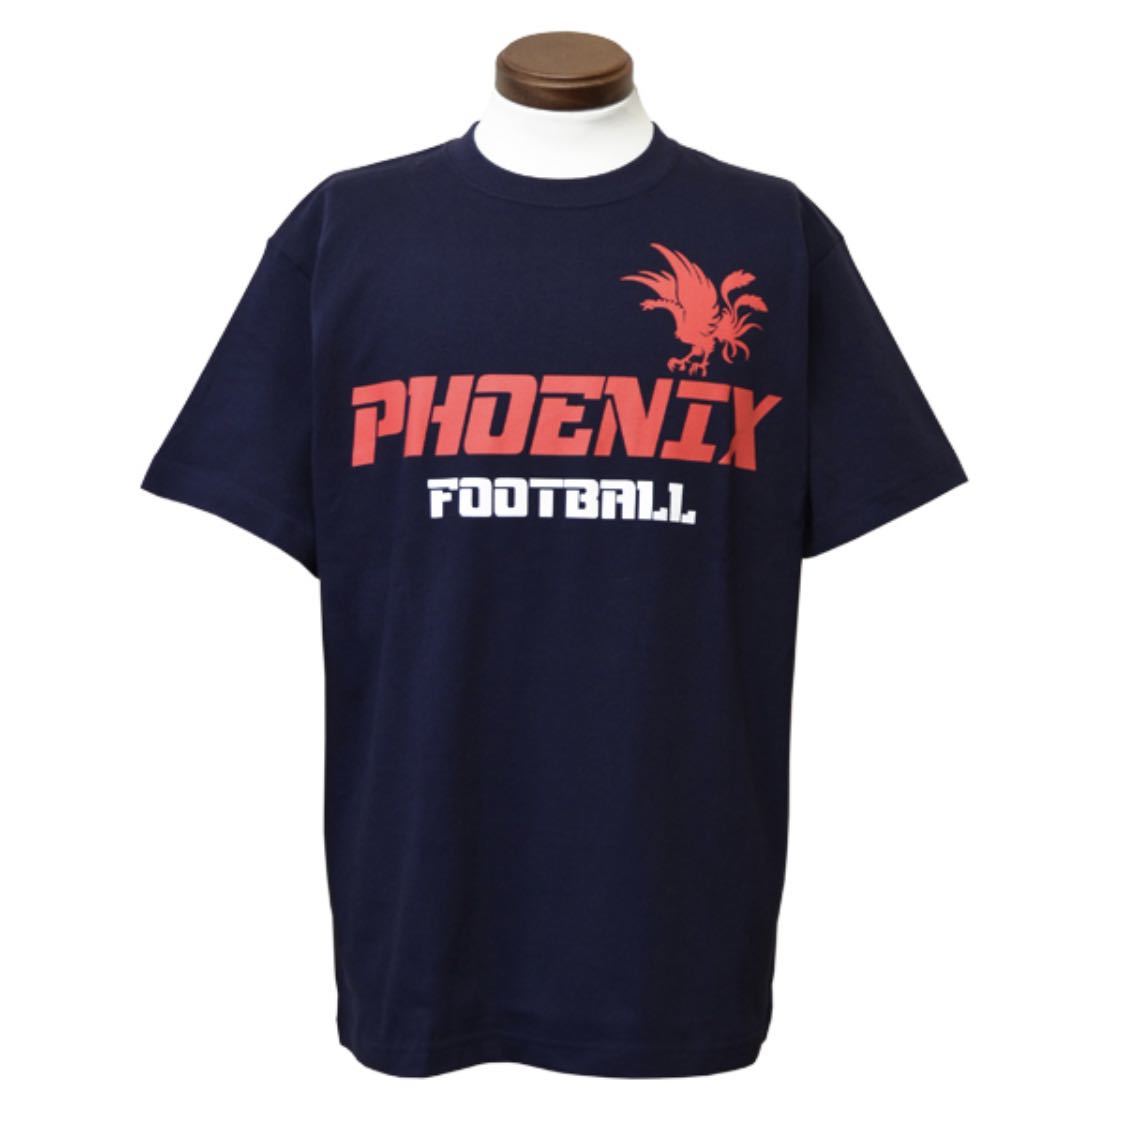 日本大学”PHOENIX”アメリカンフットボール部プラクティスシャツ Mサイズ 新品・未使用(ネイビー)